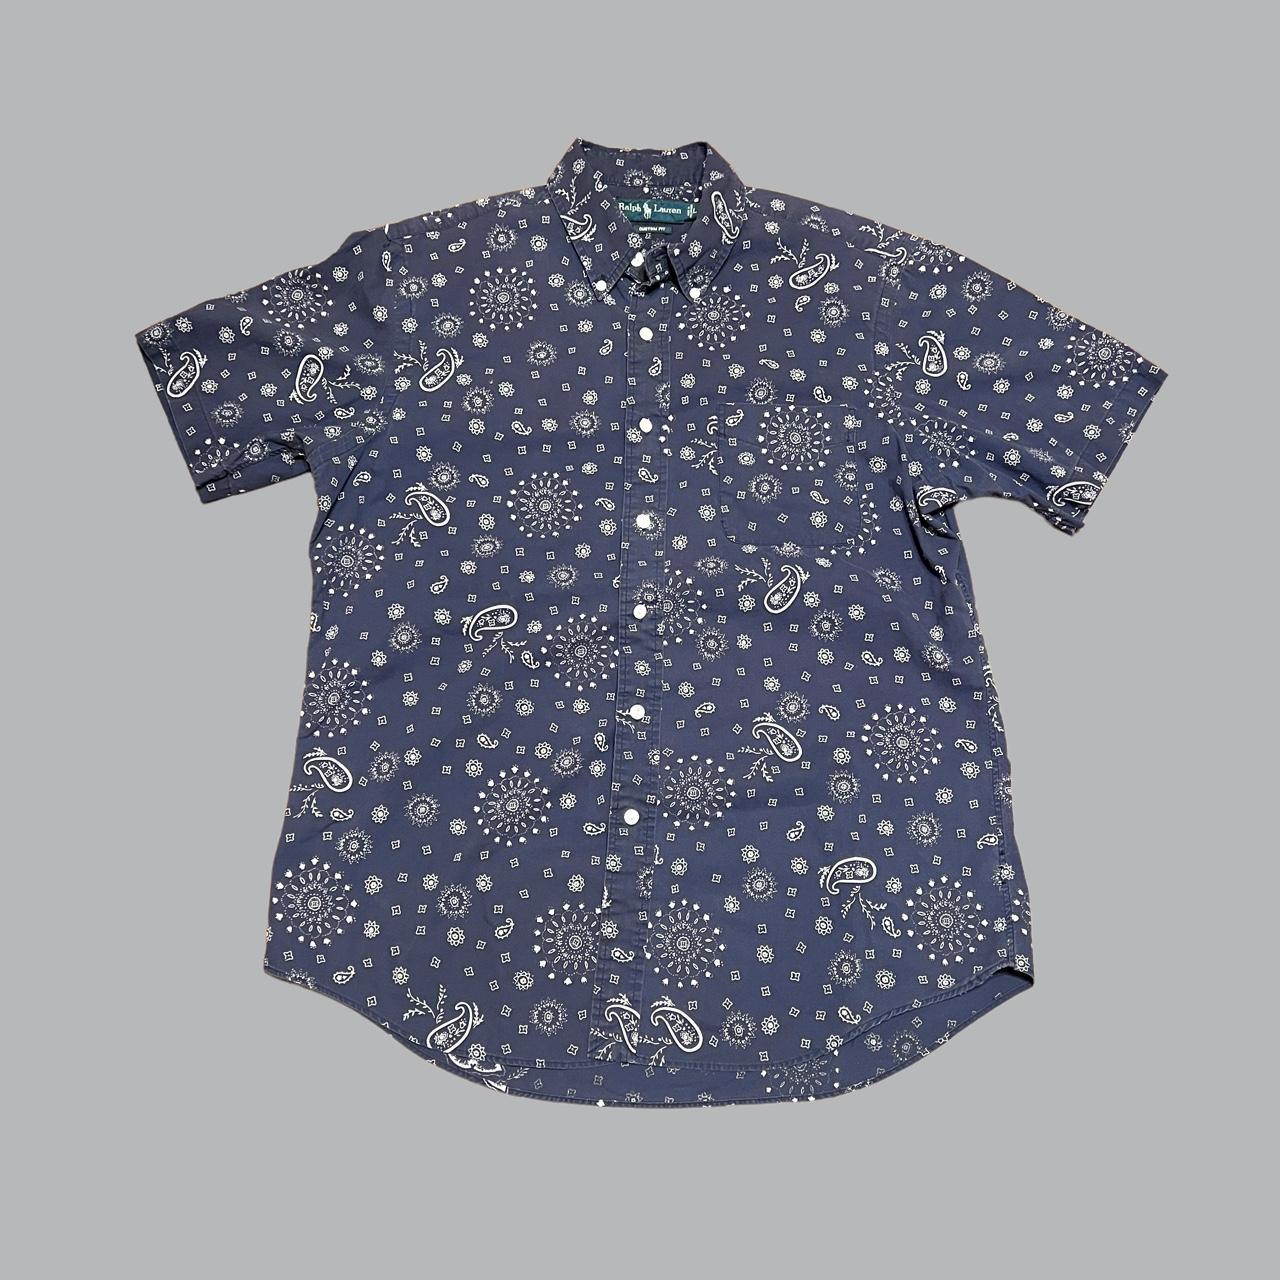 Polo Ralph Lauren Men's Blue and Navy Shirt | Depop